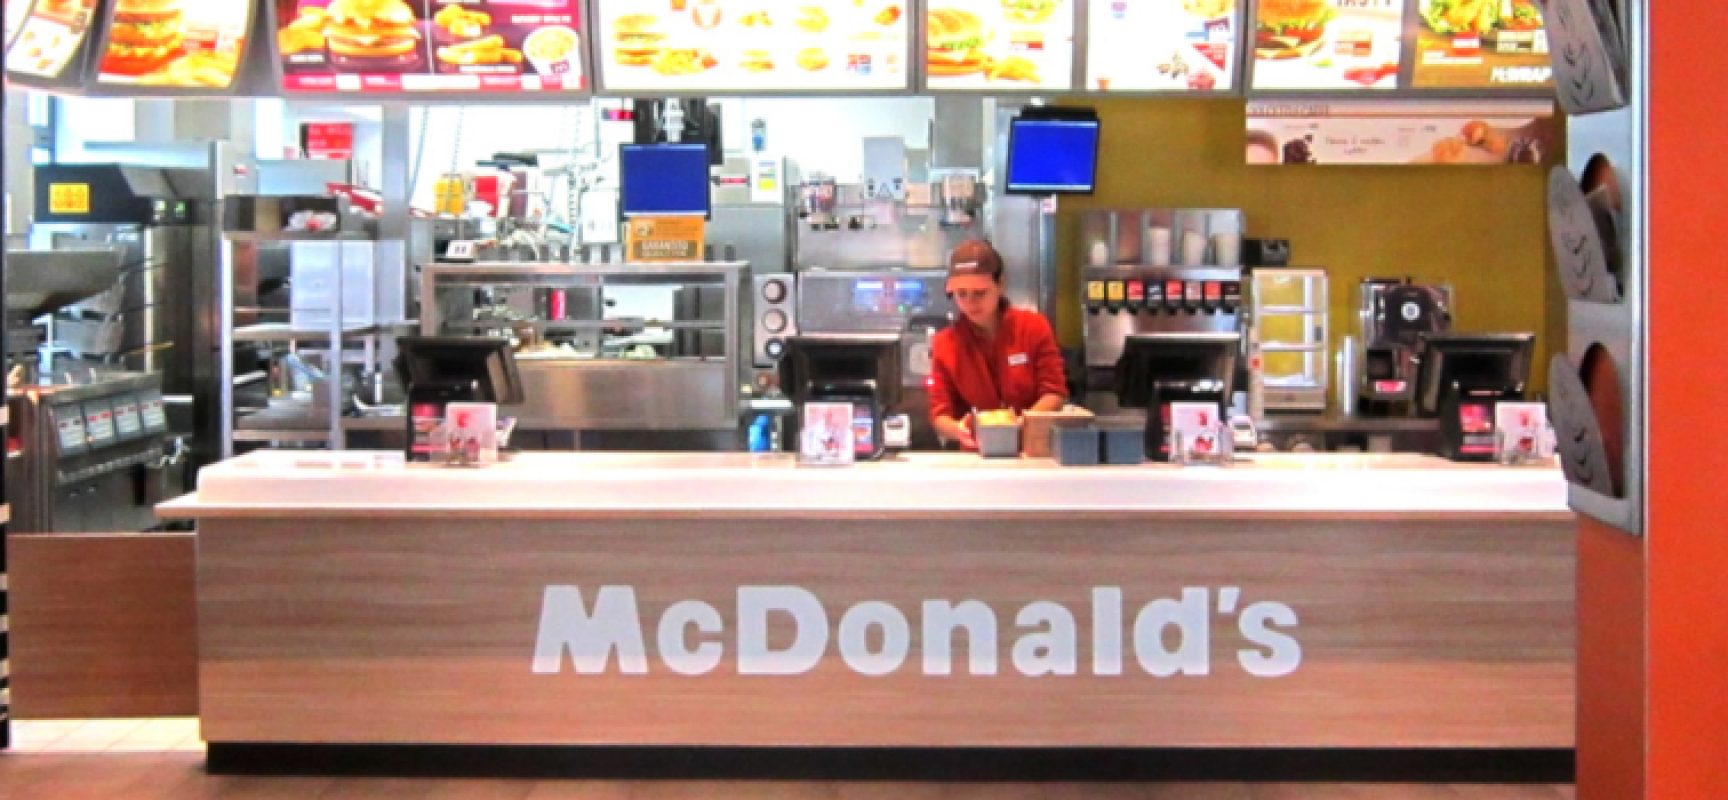 McDonald’s cerca 35 persone da inserire in organico tra Bisceglie, Molfetta e Barletta